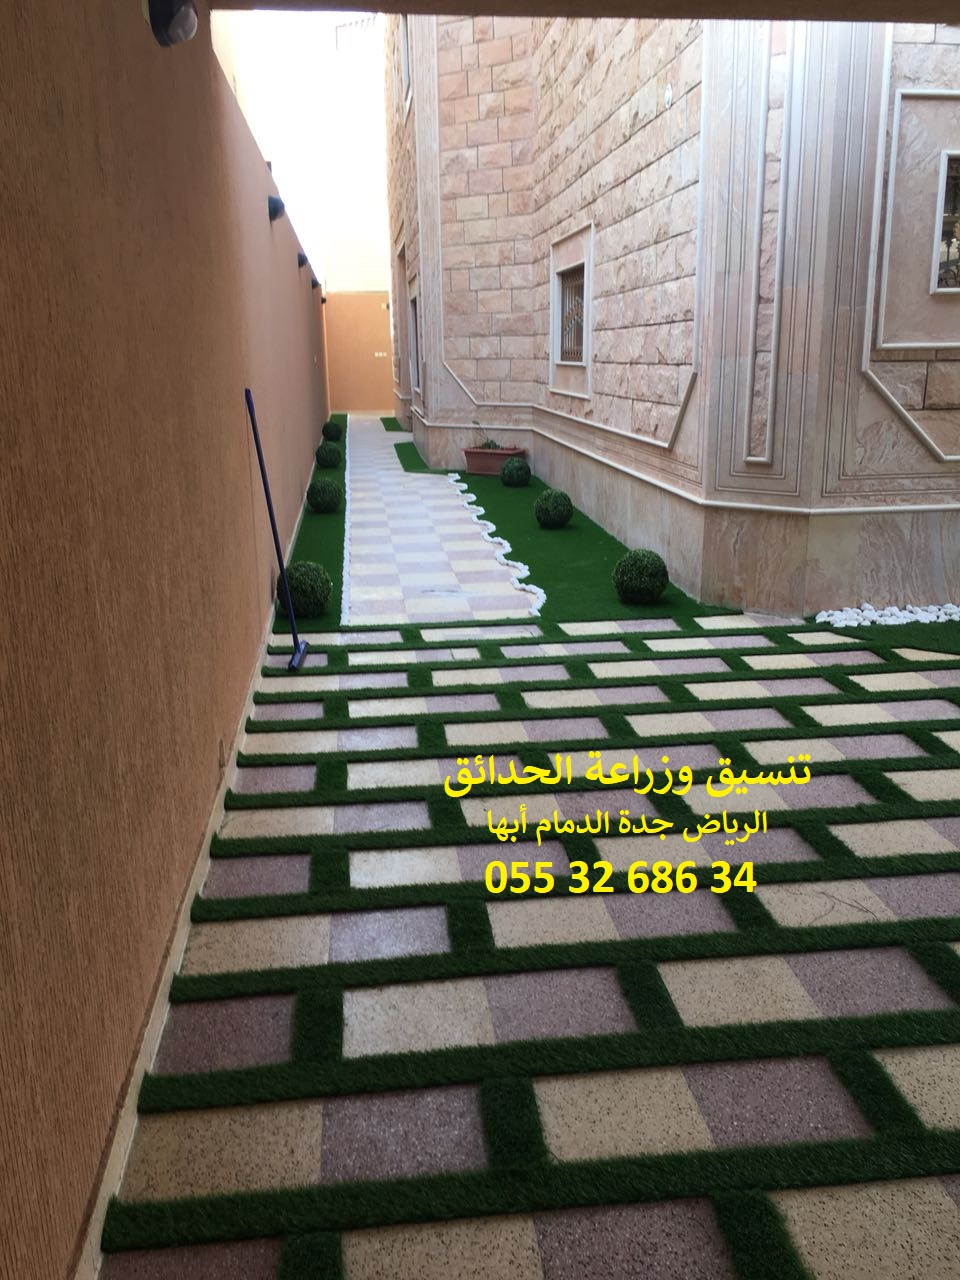 شركة تنسيق حدائق الرياض جدة الدمام ابها 0553268634 P_8784xnou10